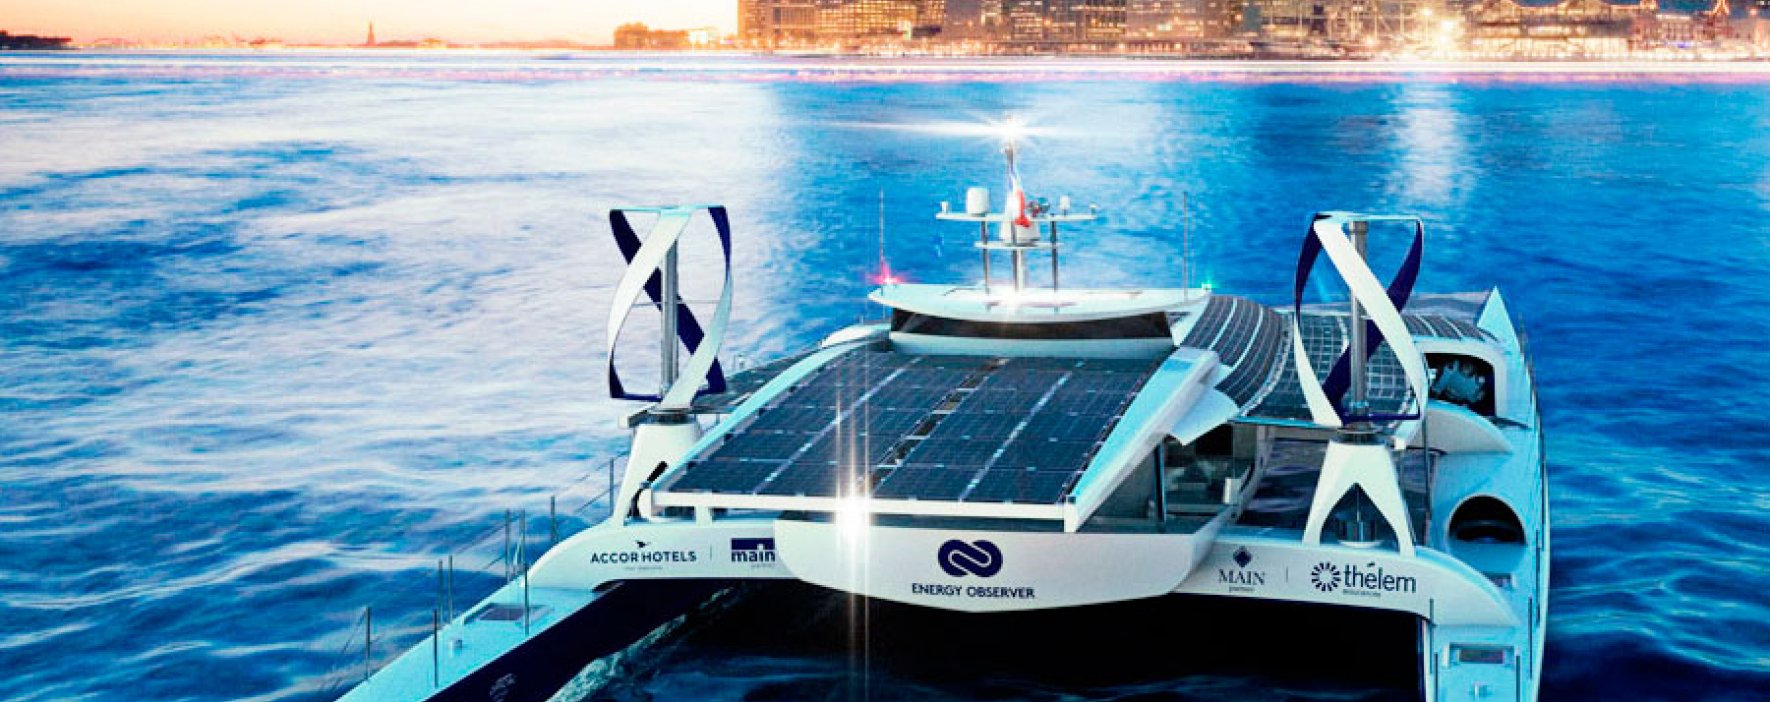 Combustible alternativo moverá barco por todo el mundo